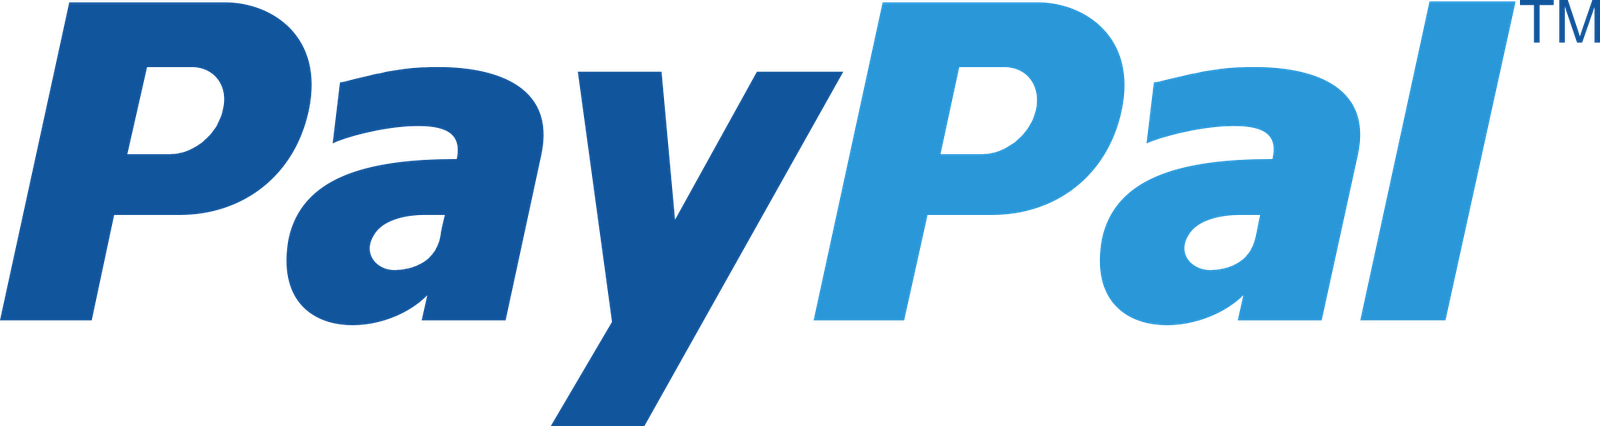 paypal-logo-png-29
